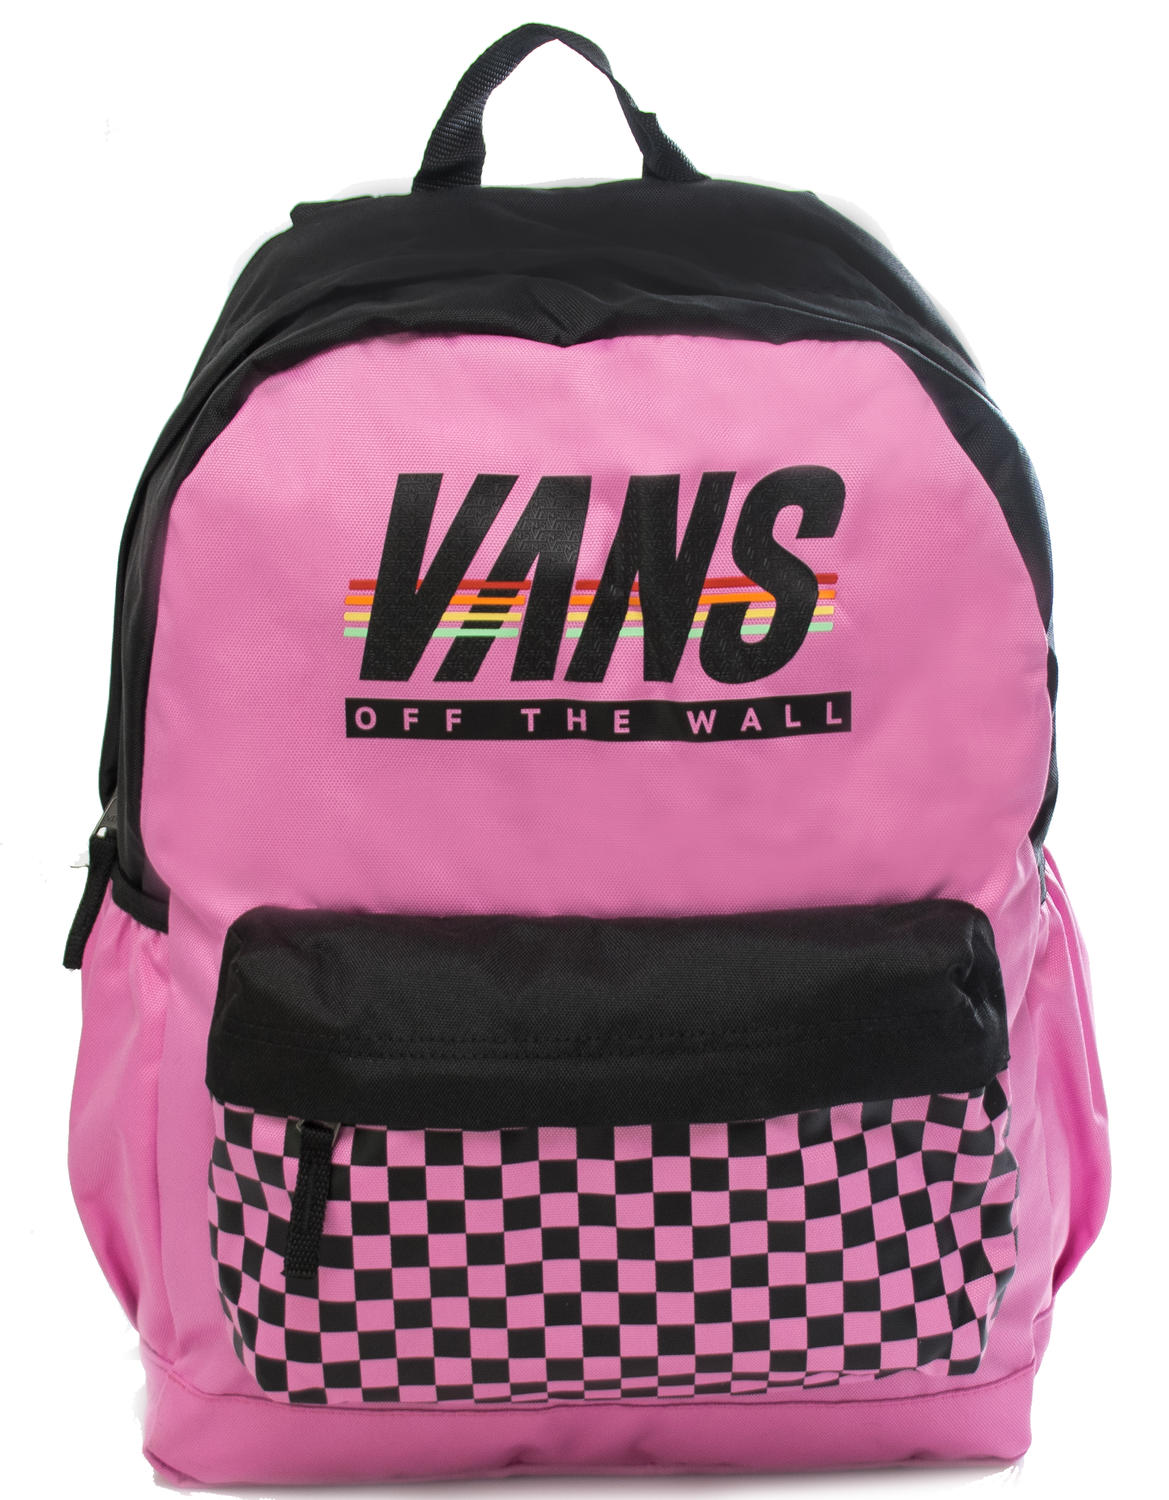 vans backpack discount code